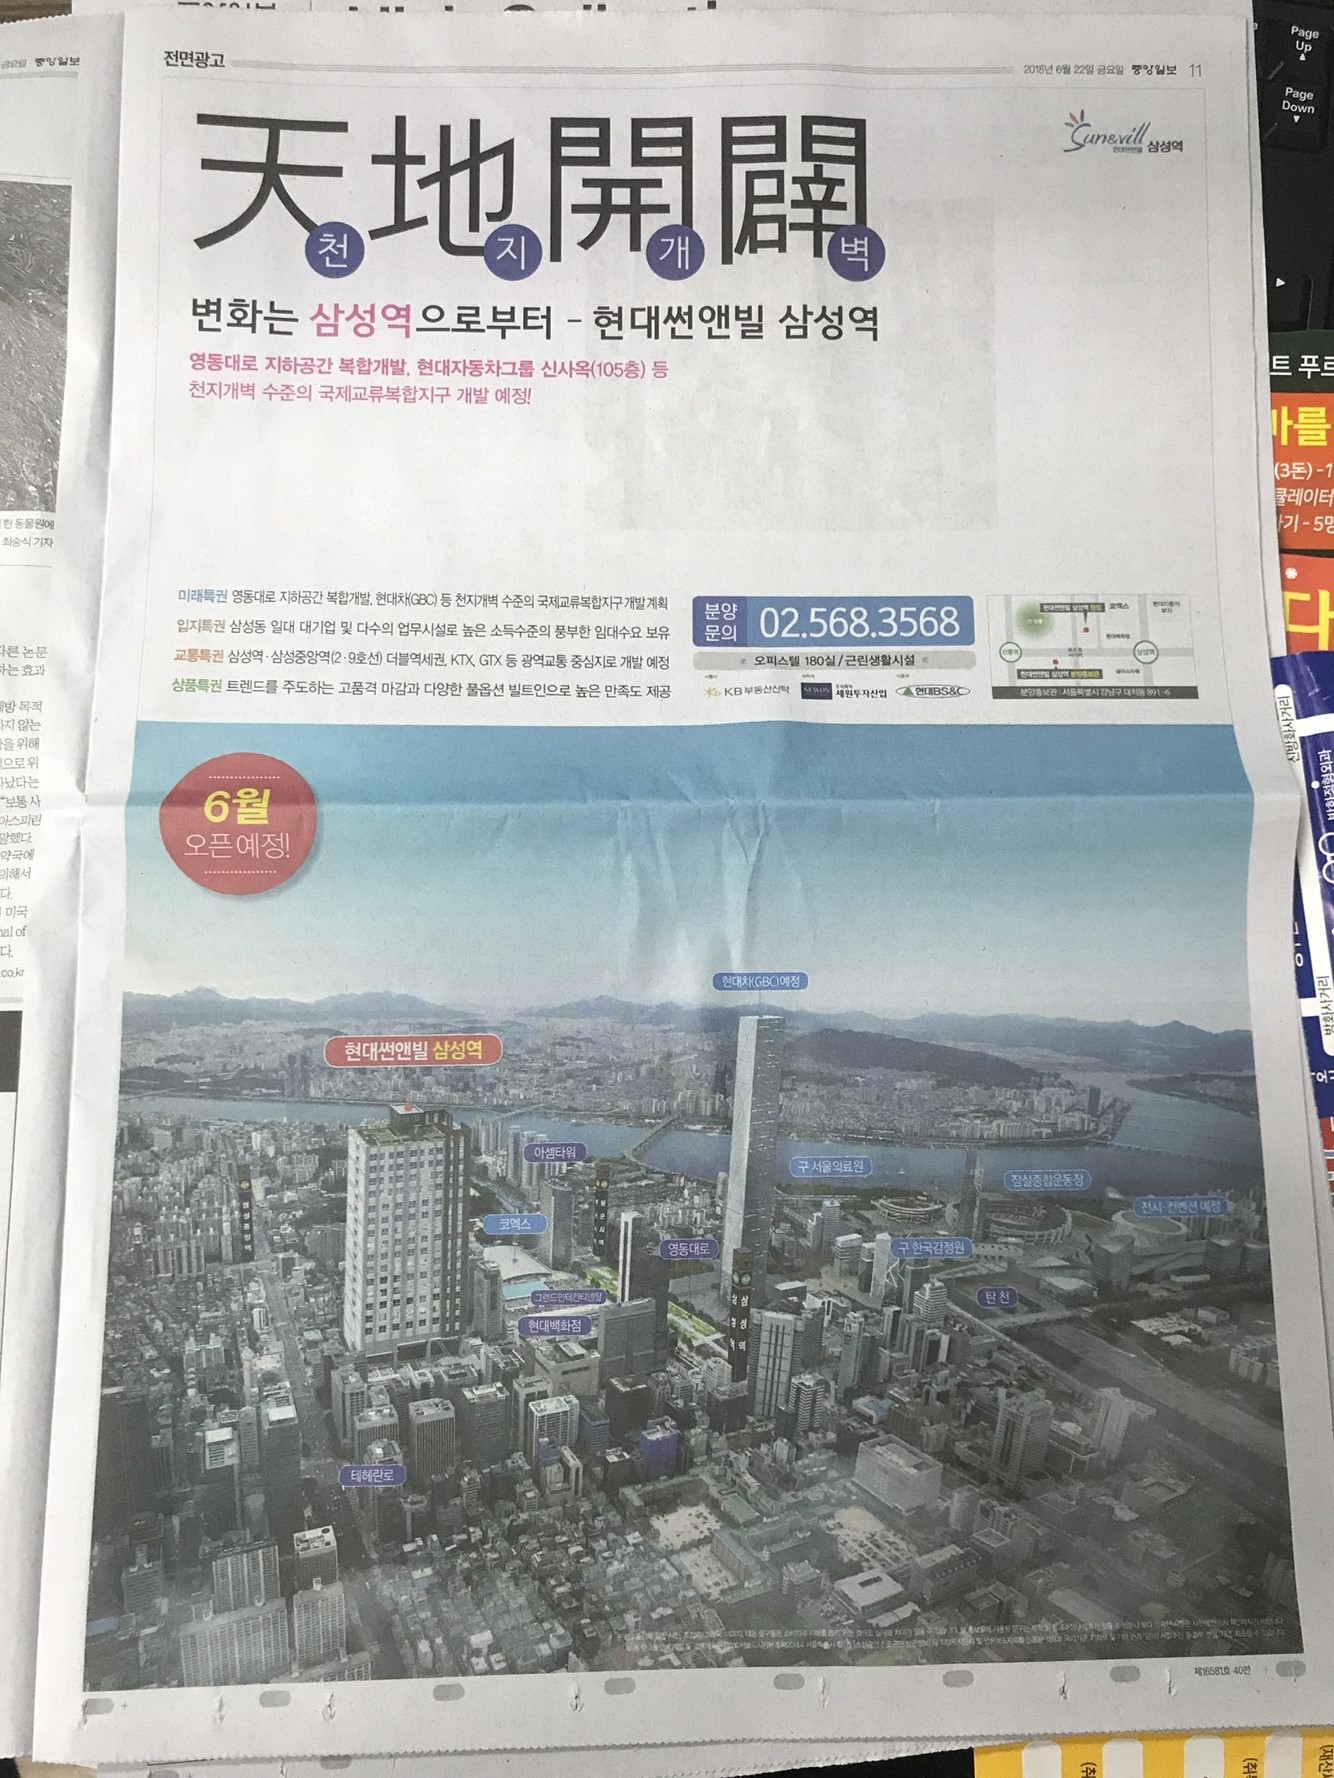 6월22일 중앙일보 11 현대썬앤빌 삼성역 (전면).jpg